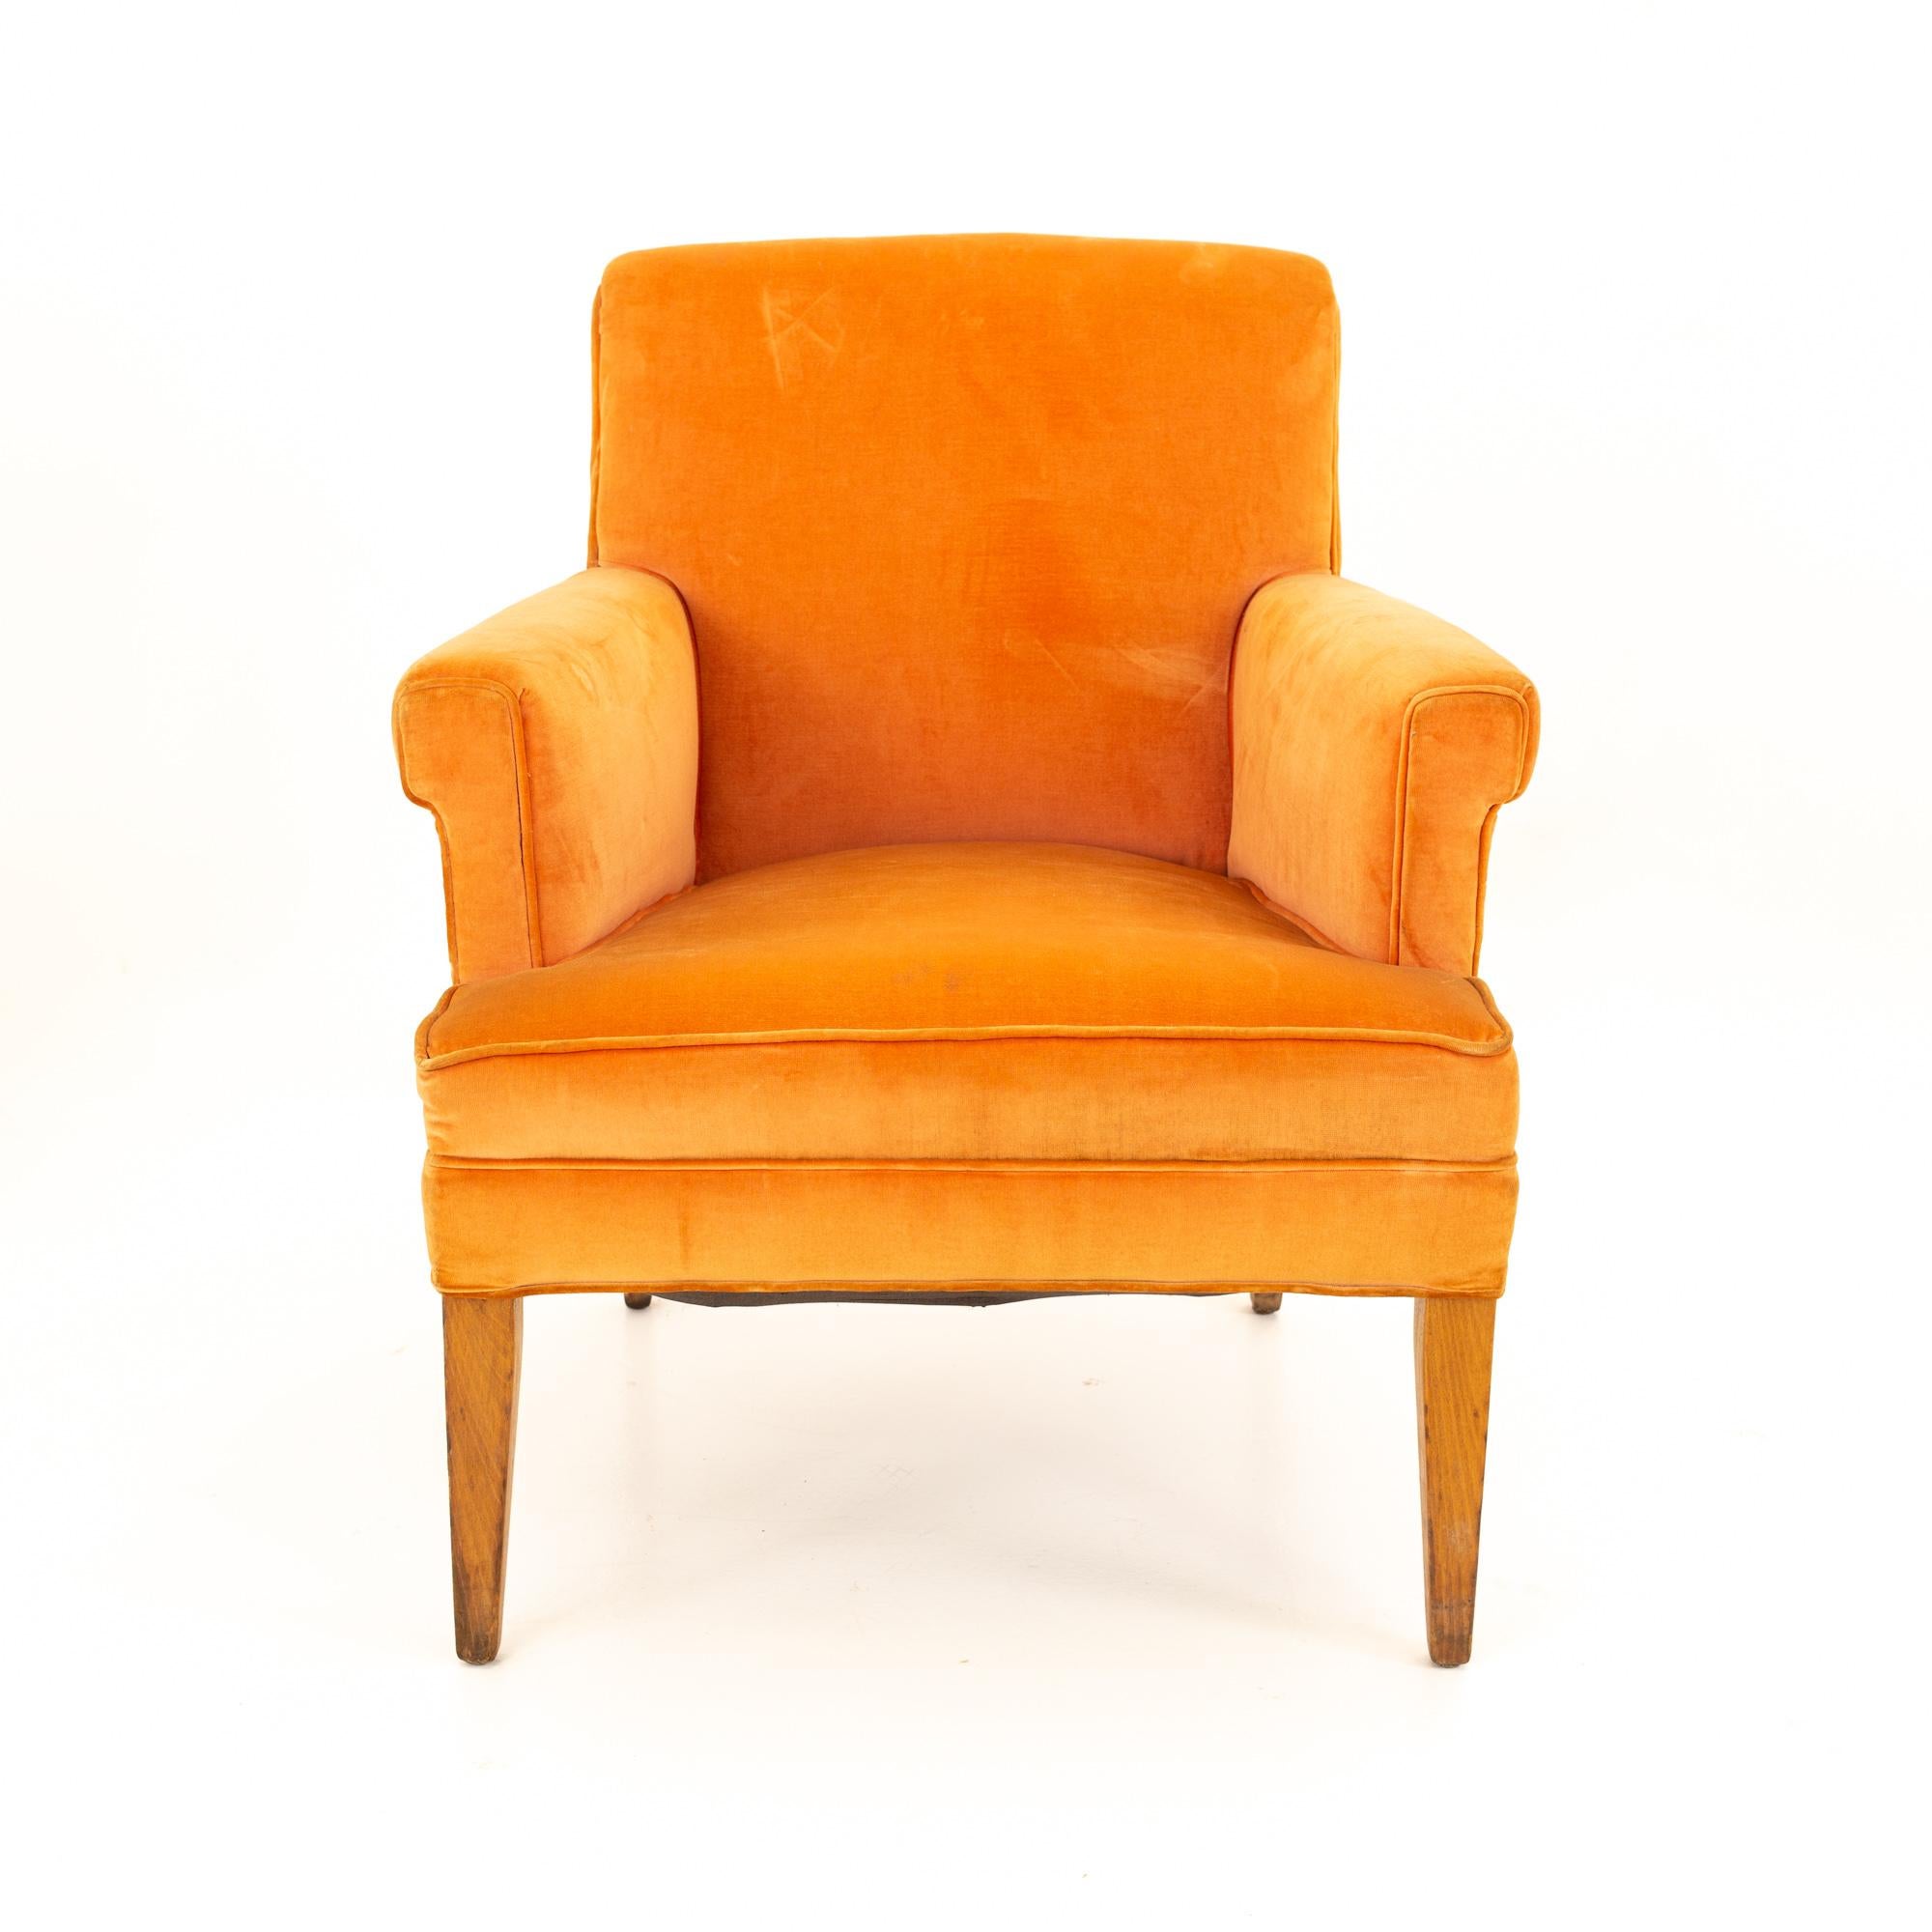 Mid Century Sessel aus orangefarbenem Samt
Der Stuhl misst: 26.5 breit x 29,5 tief x 31,5 hoch, mit einer Sitzhöhe von 16,5 Zoll

Alle Möbelstücke sind in einem so genannten restaurierten Vintage-Zustand zu haben. Das bedeutet, dass das Stück beim